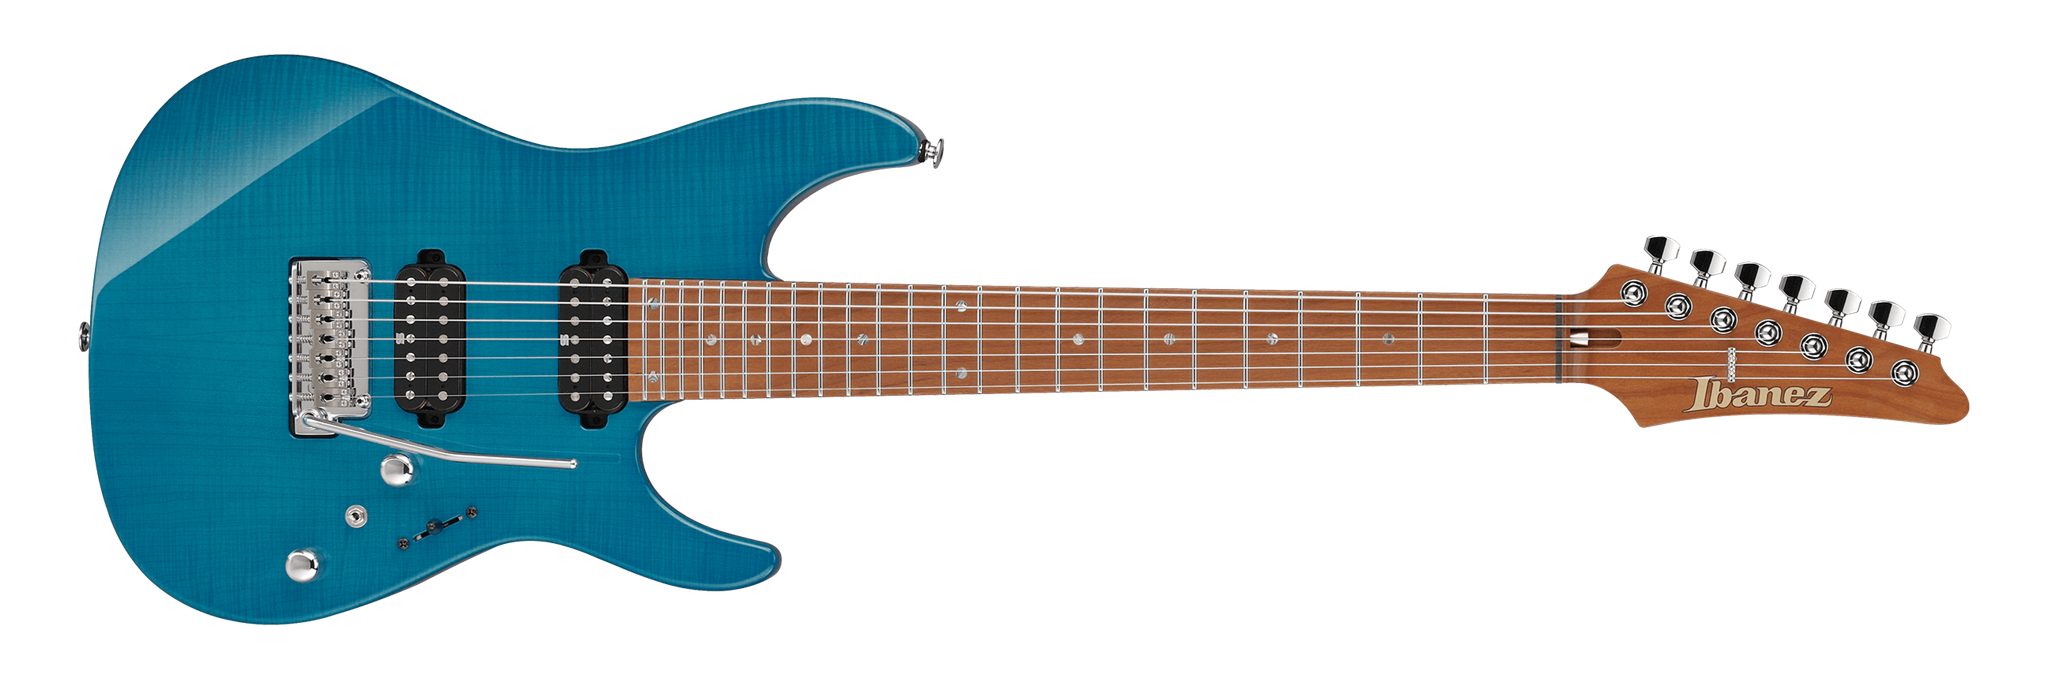 	IBANEZ Signature MM7 Martin Miller Trans Aqua Blue 7-String Electric Guitar